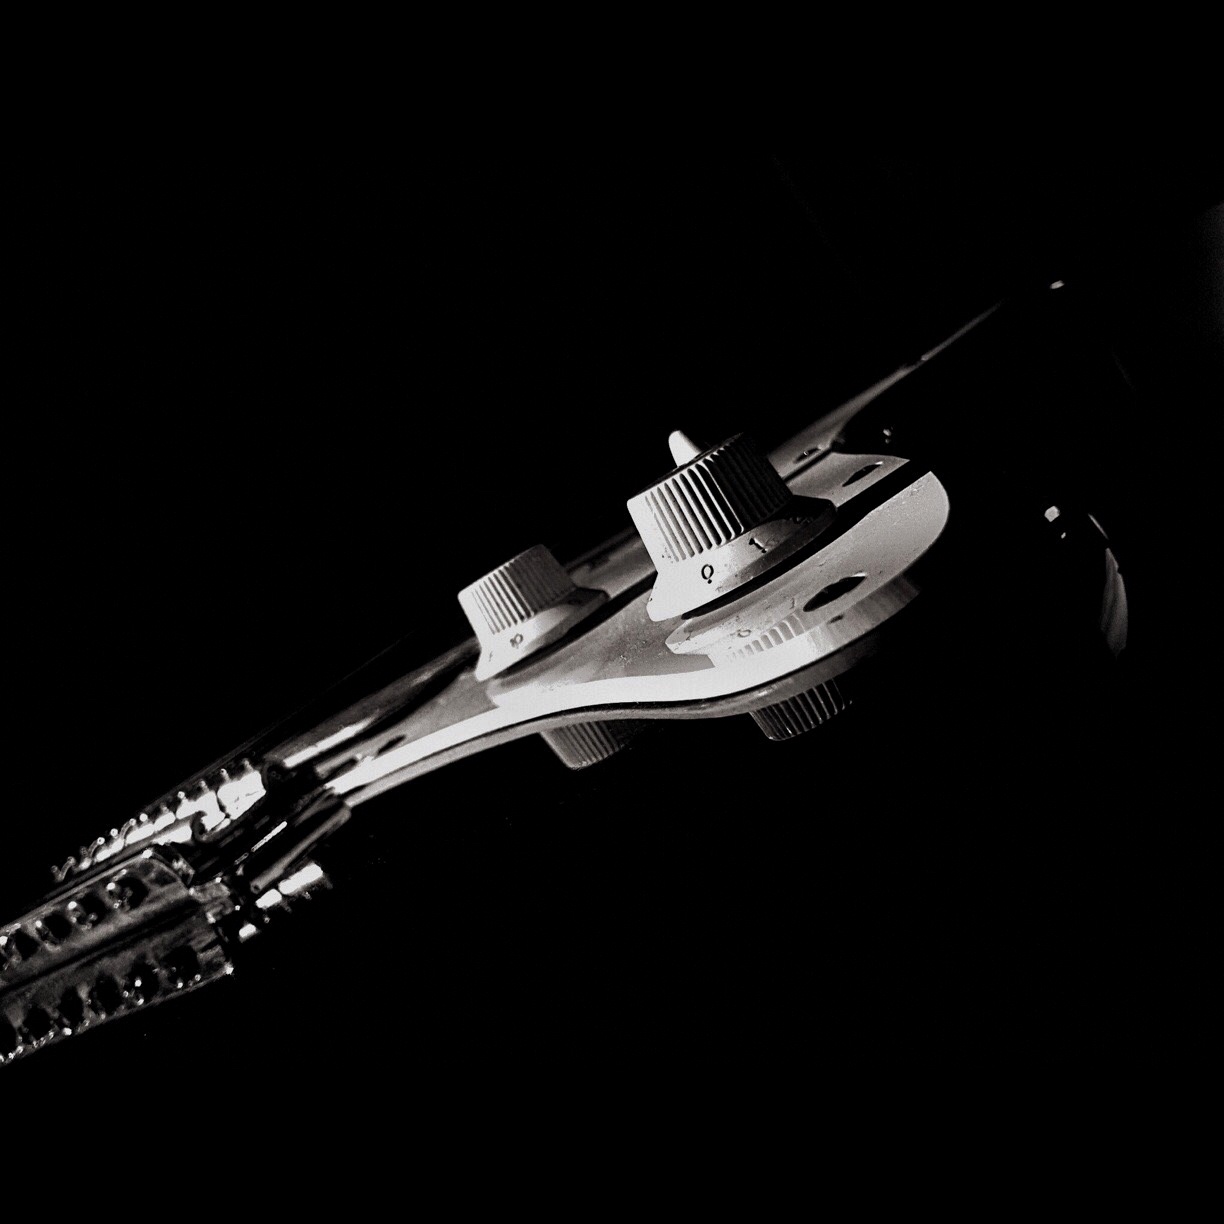 Fekete-fehér fénykép egy gitárról